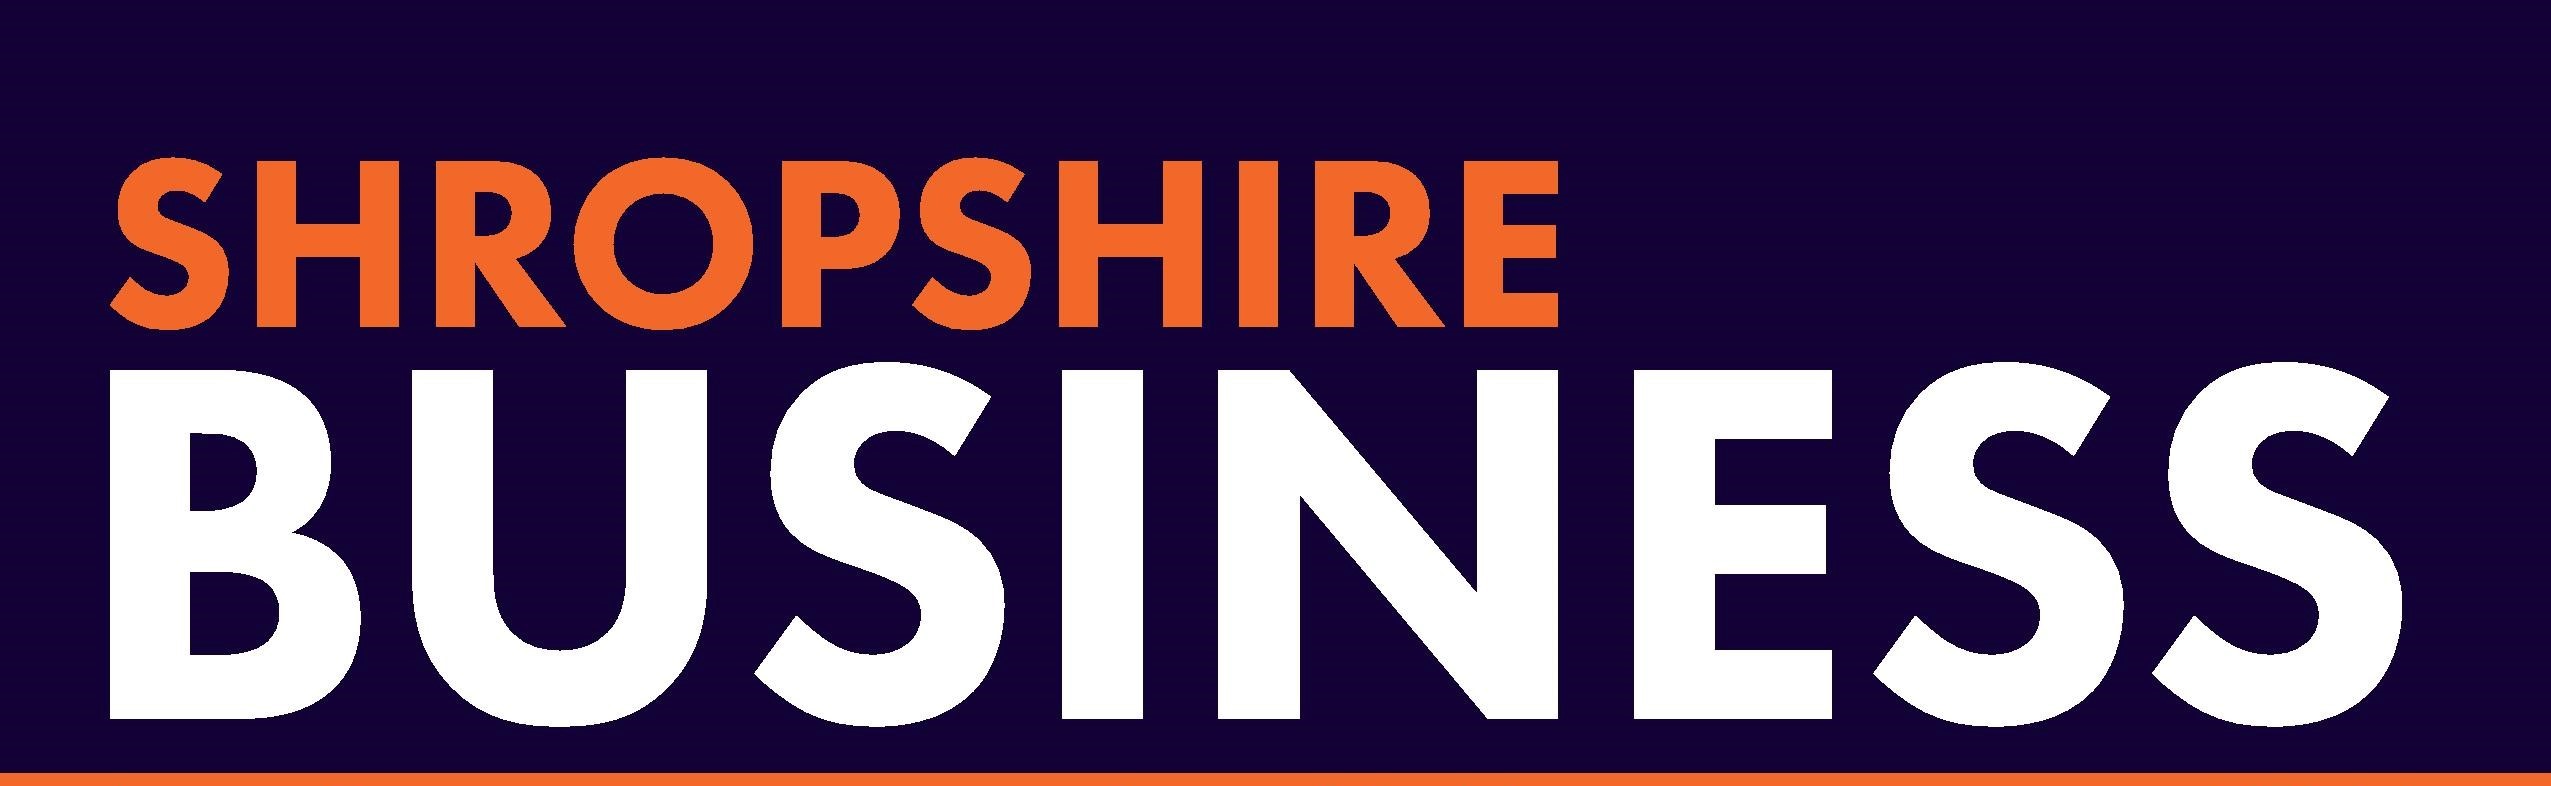 Shropshire Business logo